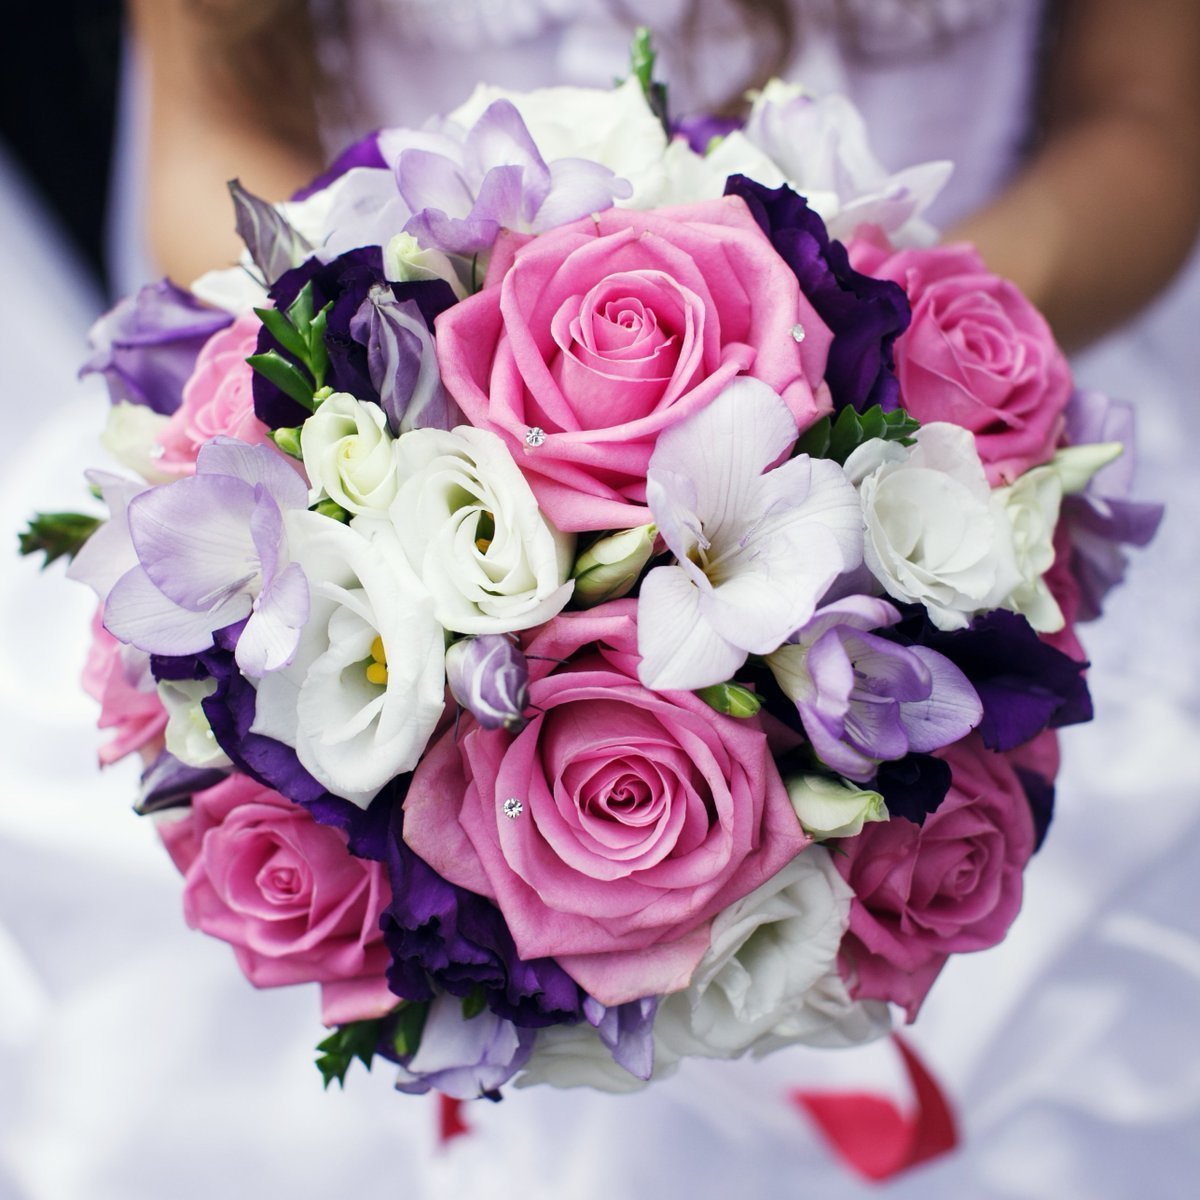 Свадьба в бирюзовом цвете, идеи по оформлению с фото